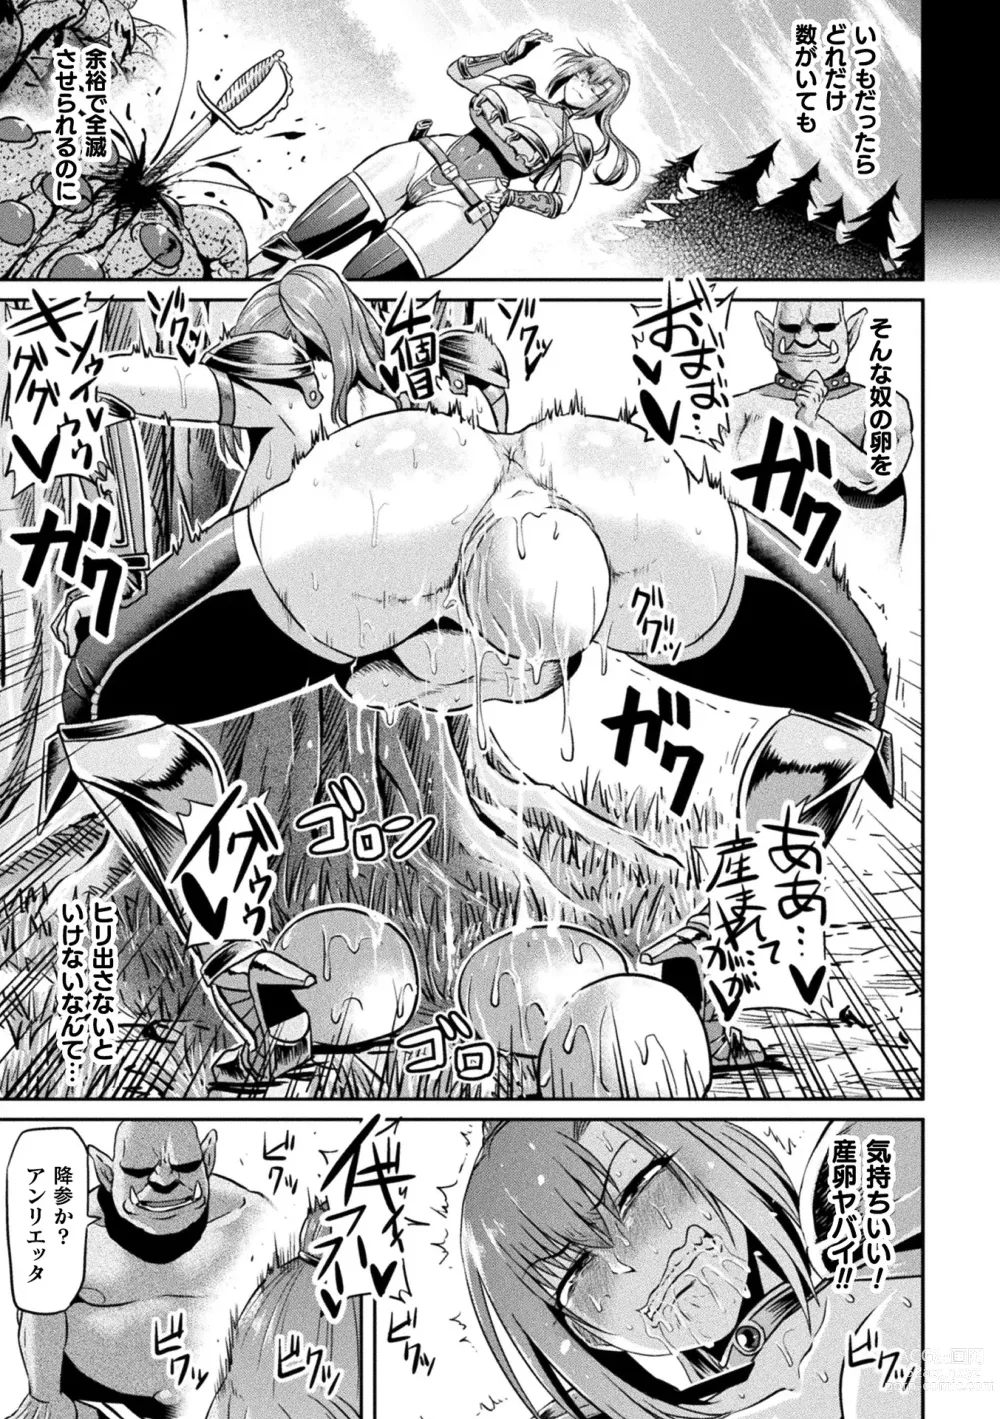 Page 159 of manga Ahegao o Sarashisu Midarana Otome